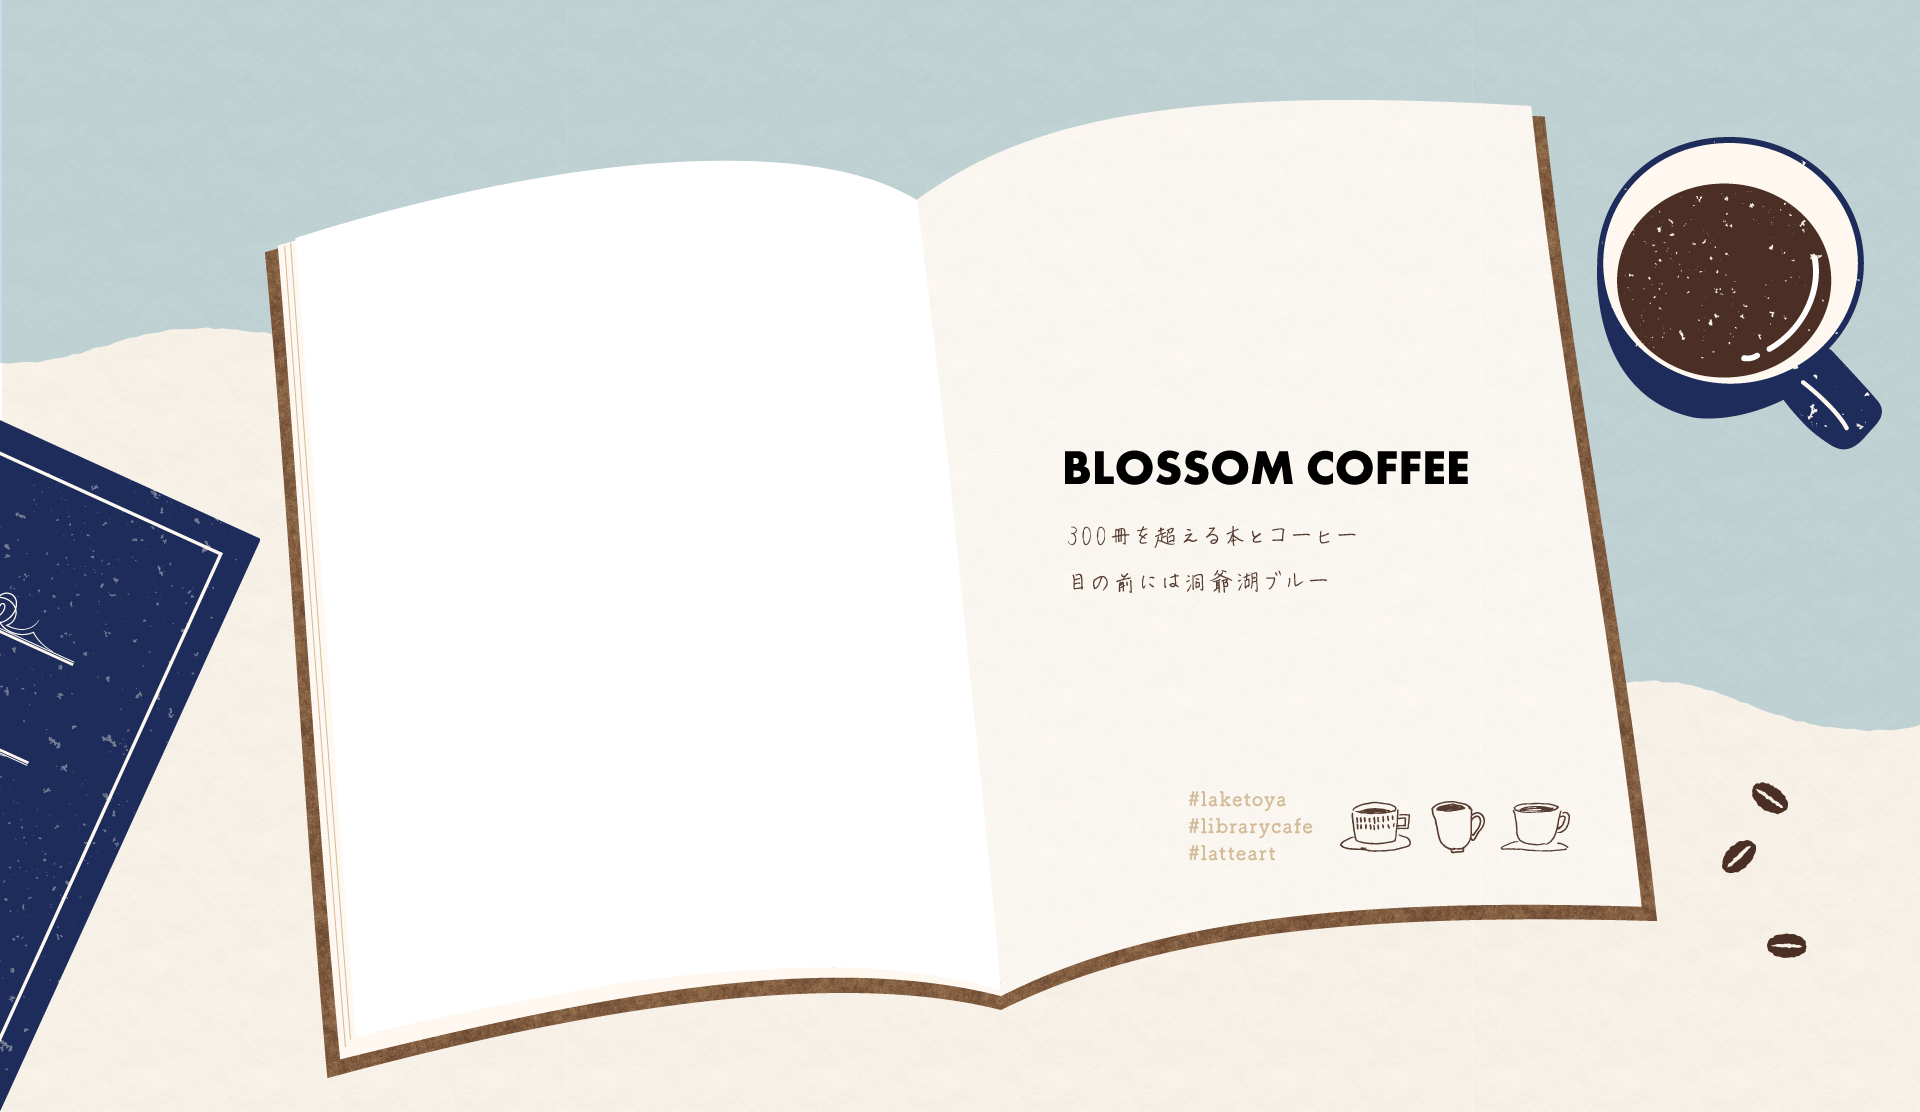 BLOSSOM COFFEE 300冊を超える本とコーヒー　目の前には洞爺湖ブルー